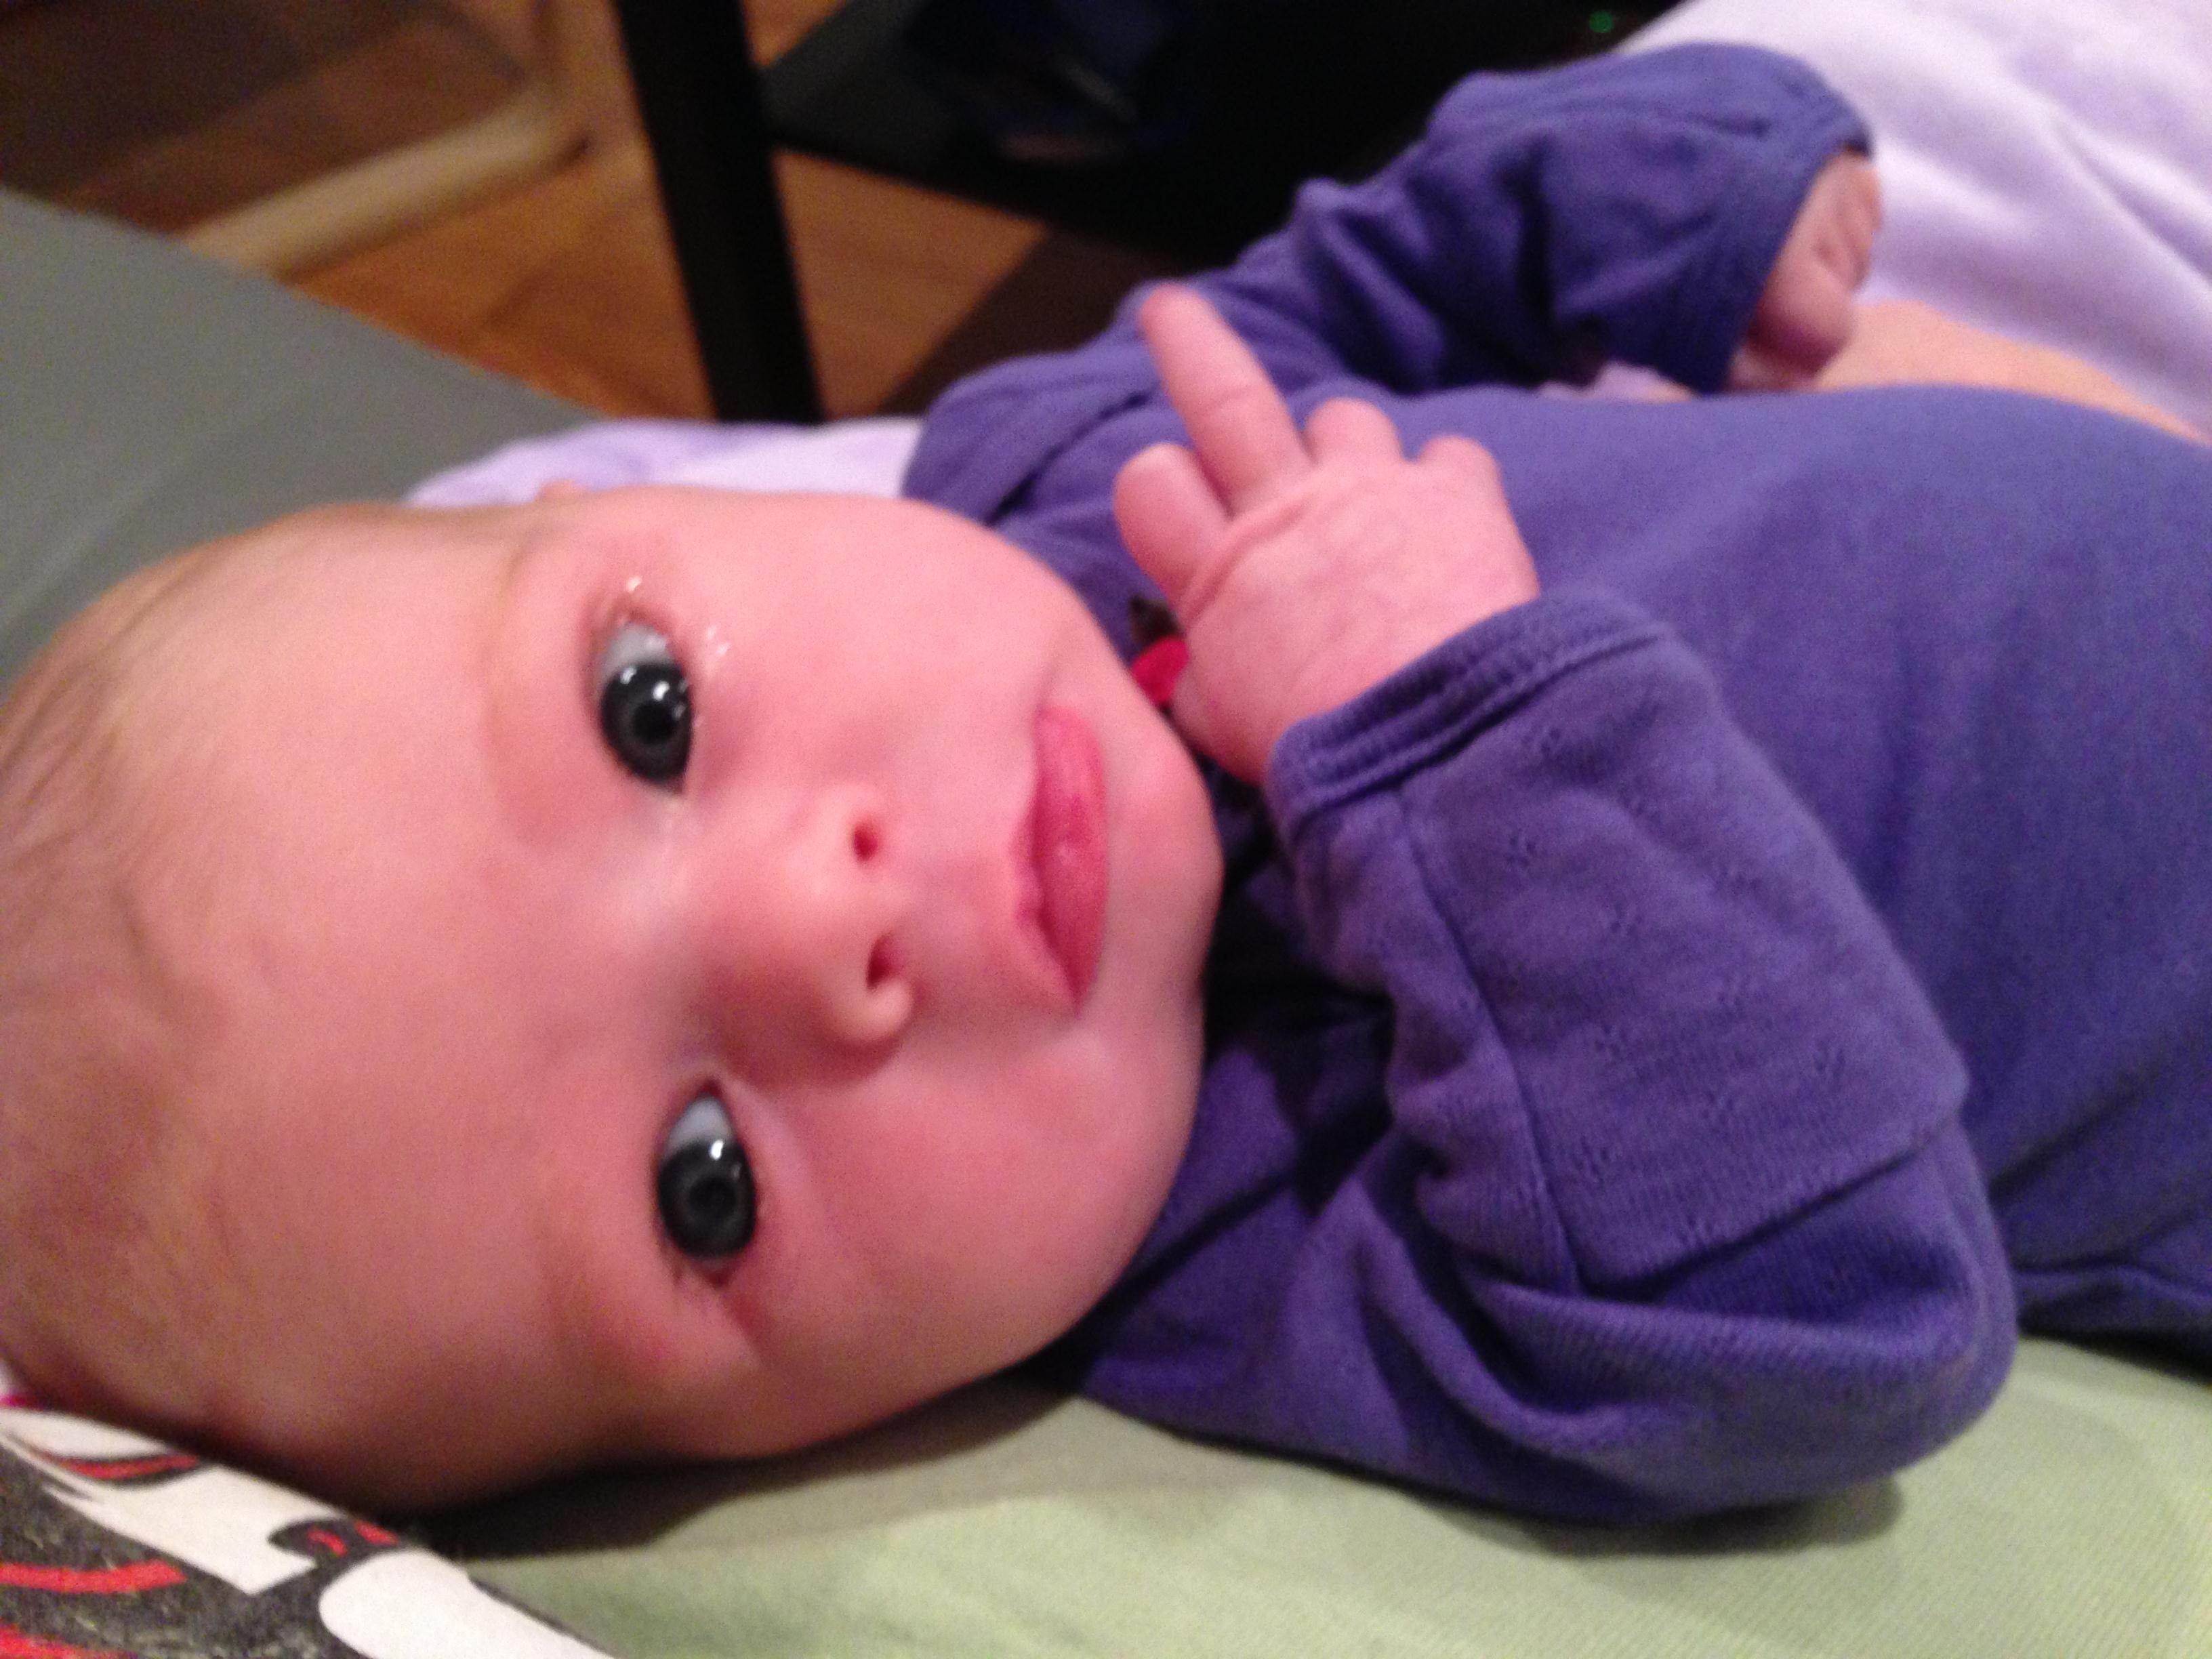 My granddaughter, Lilla Keshet Graur, gives ENCODE the finger (2013)